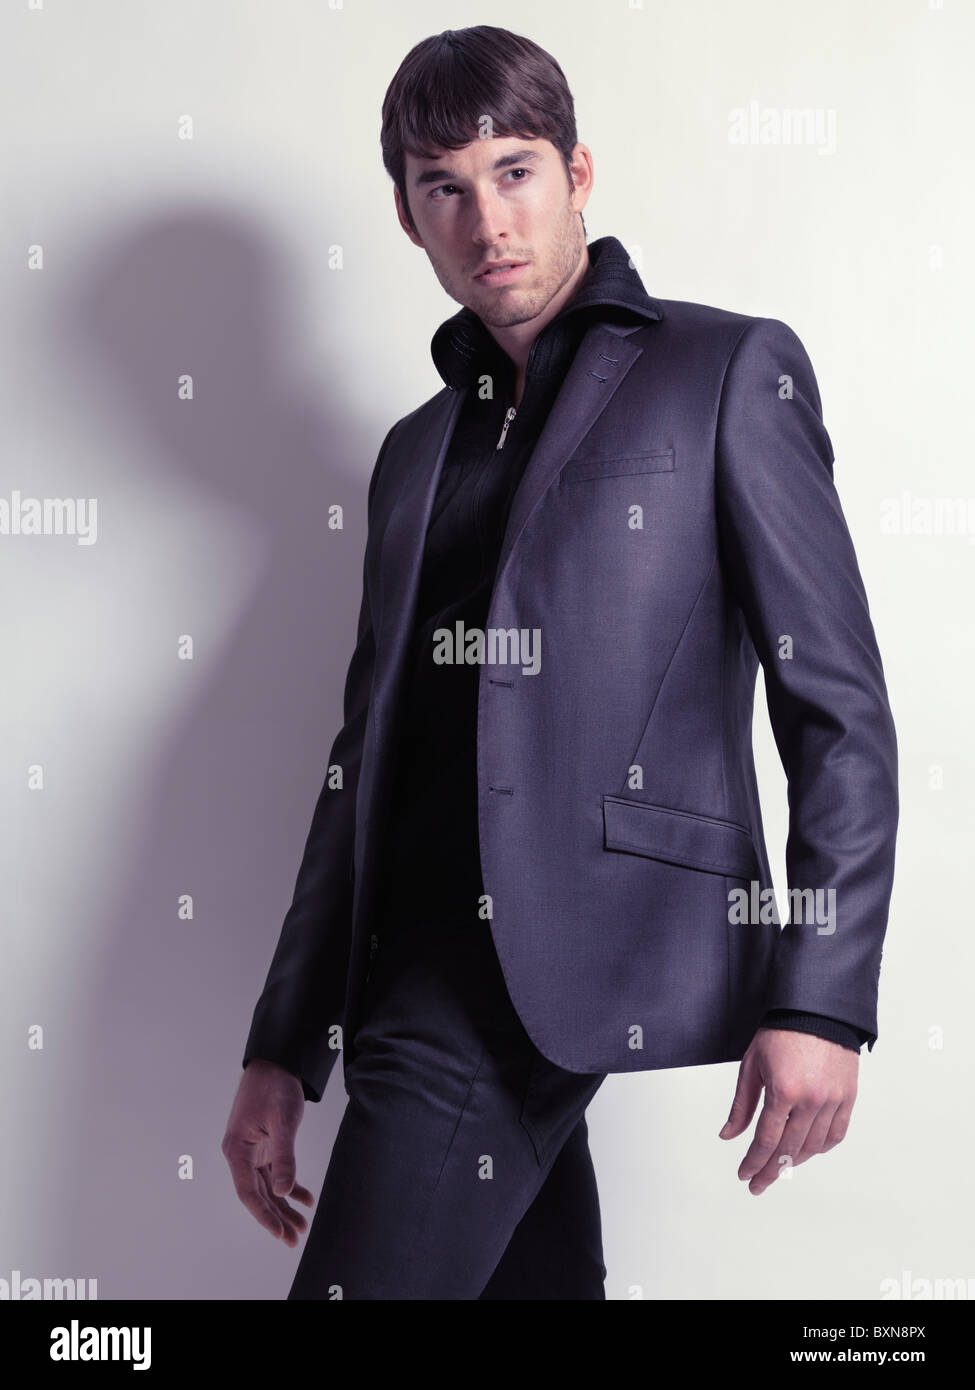 Fashion portrait d'un jeune homme vêtu d'un blazer noir isolé sur fond blanc Banque D'Images